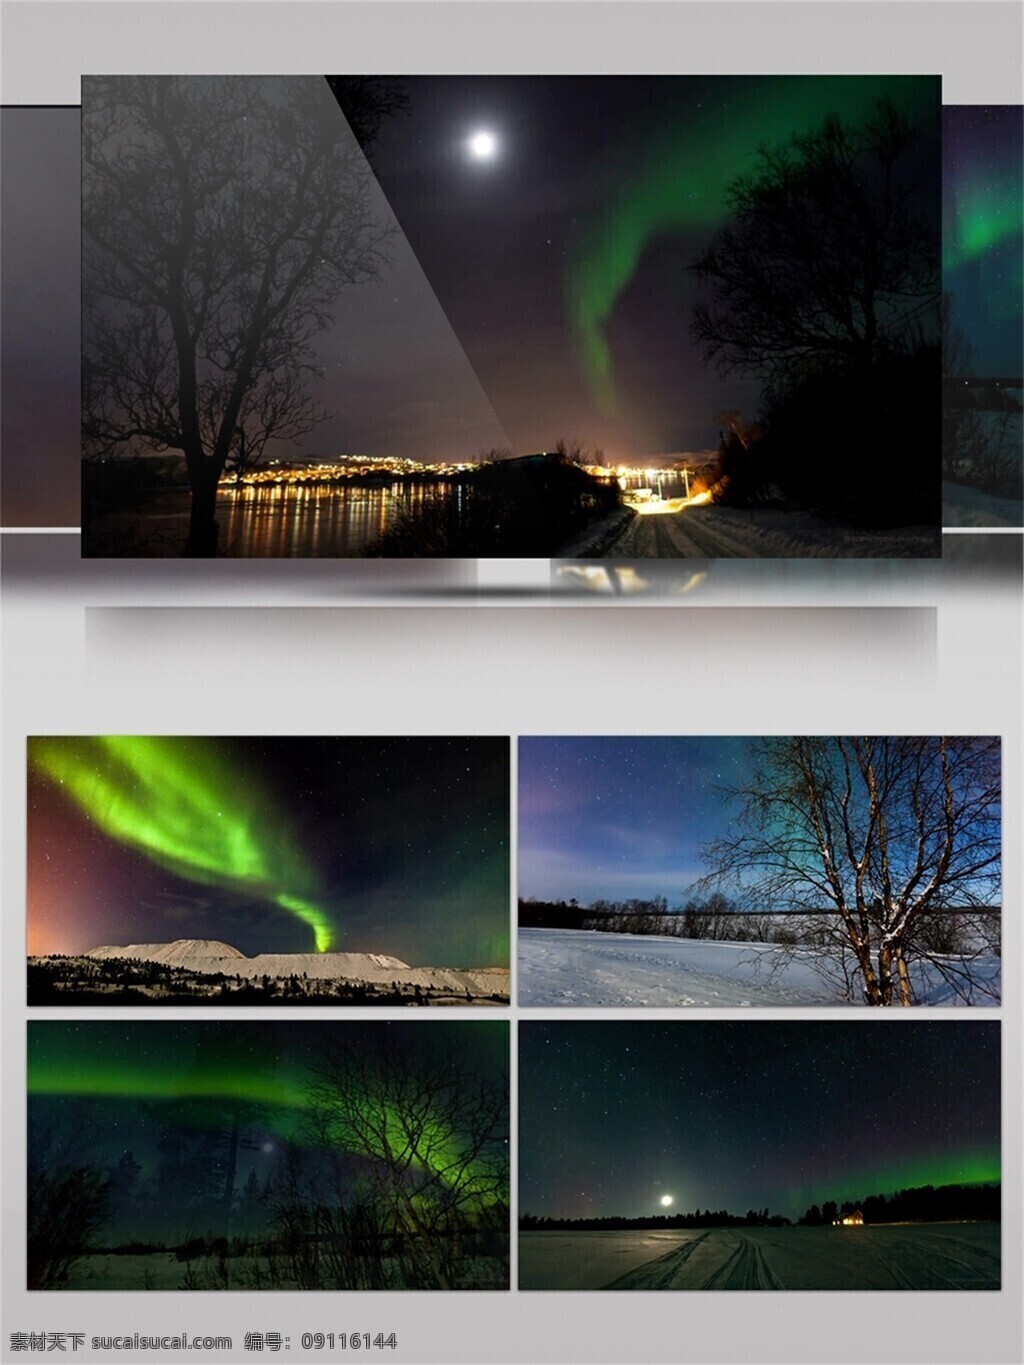 雪地 极光 美景 视频 音效 北极熊 星星 唯美 夜晚 绚丽 地球磁场 北极 芬兰